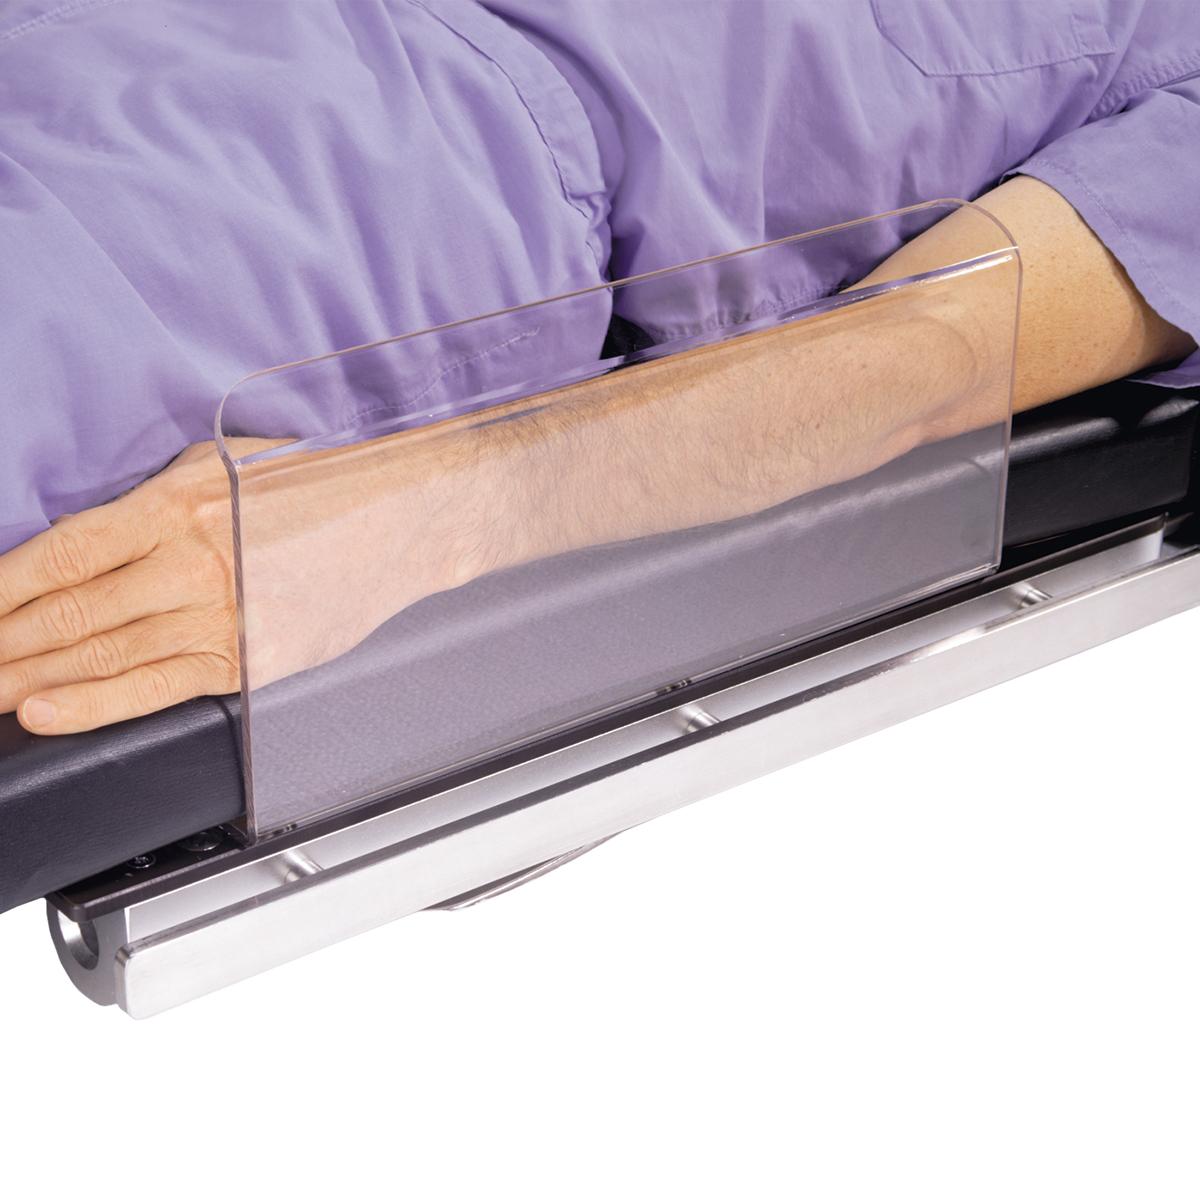 Armskydd, används av en patient